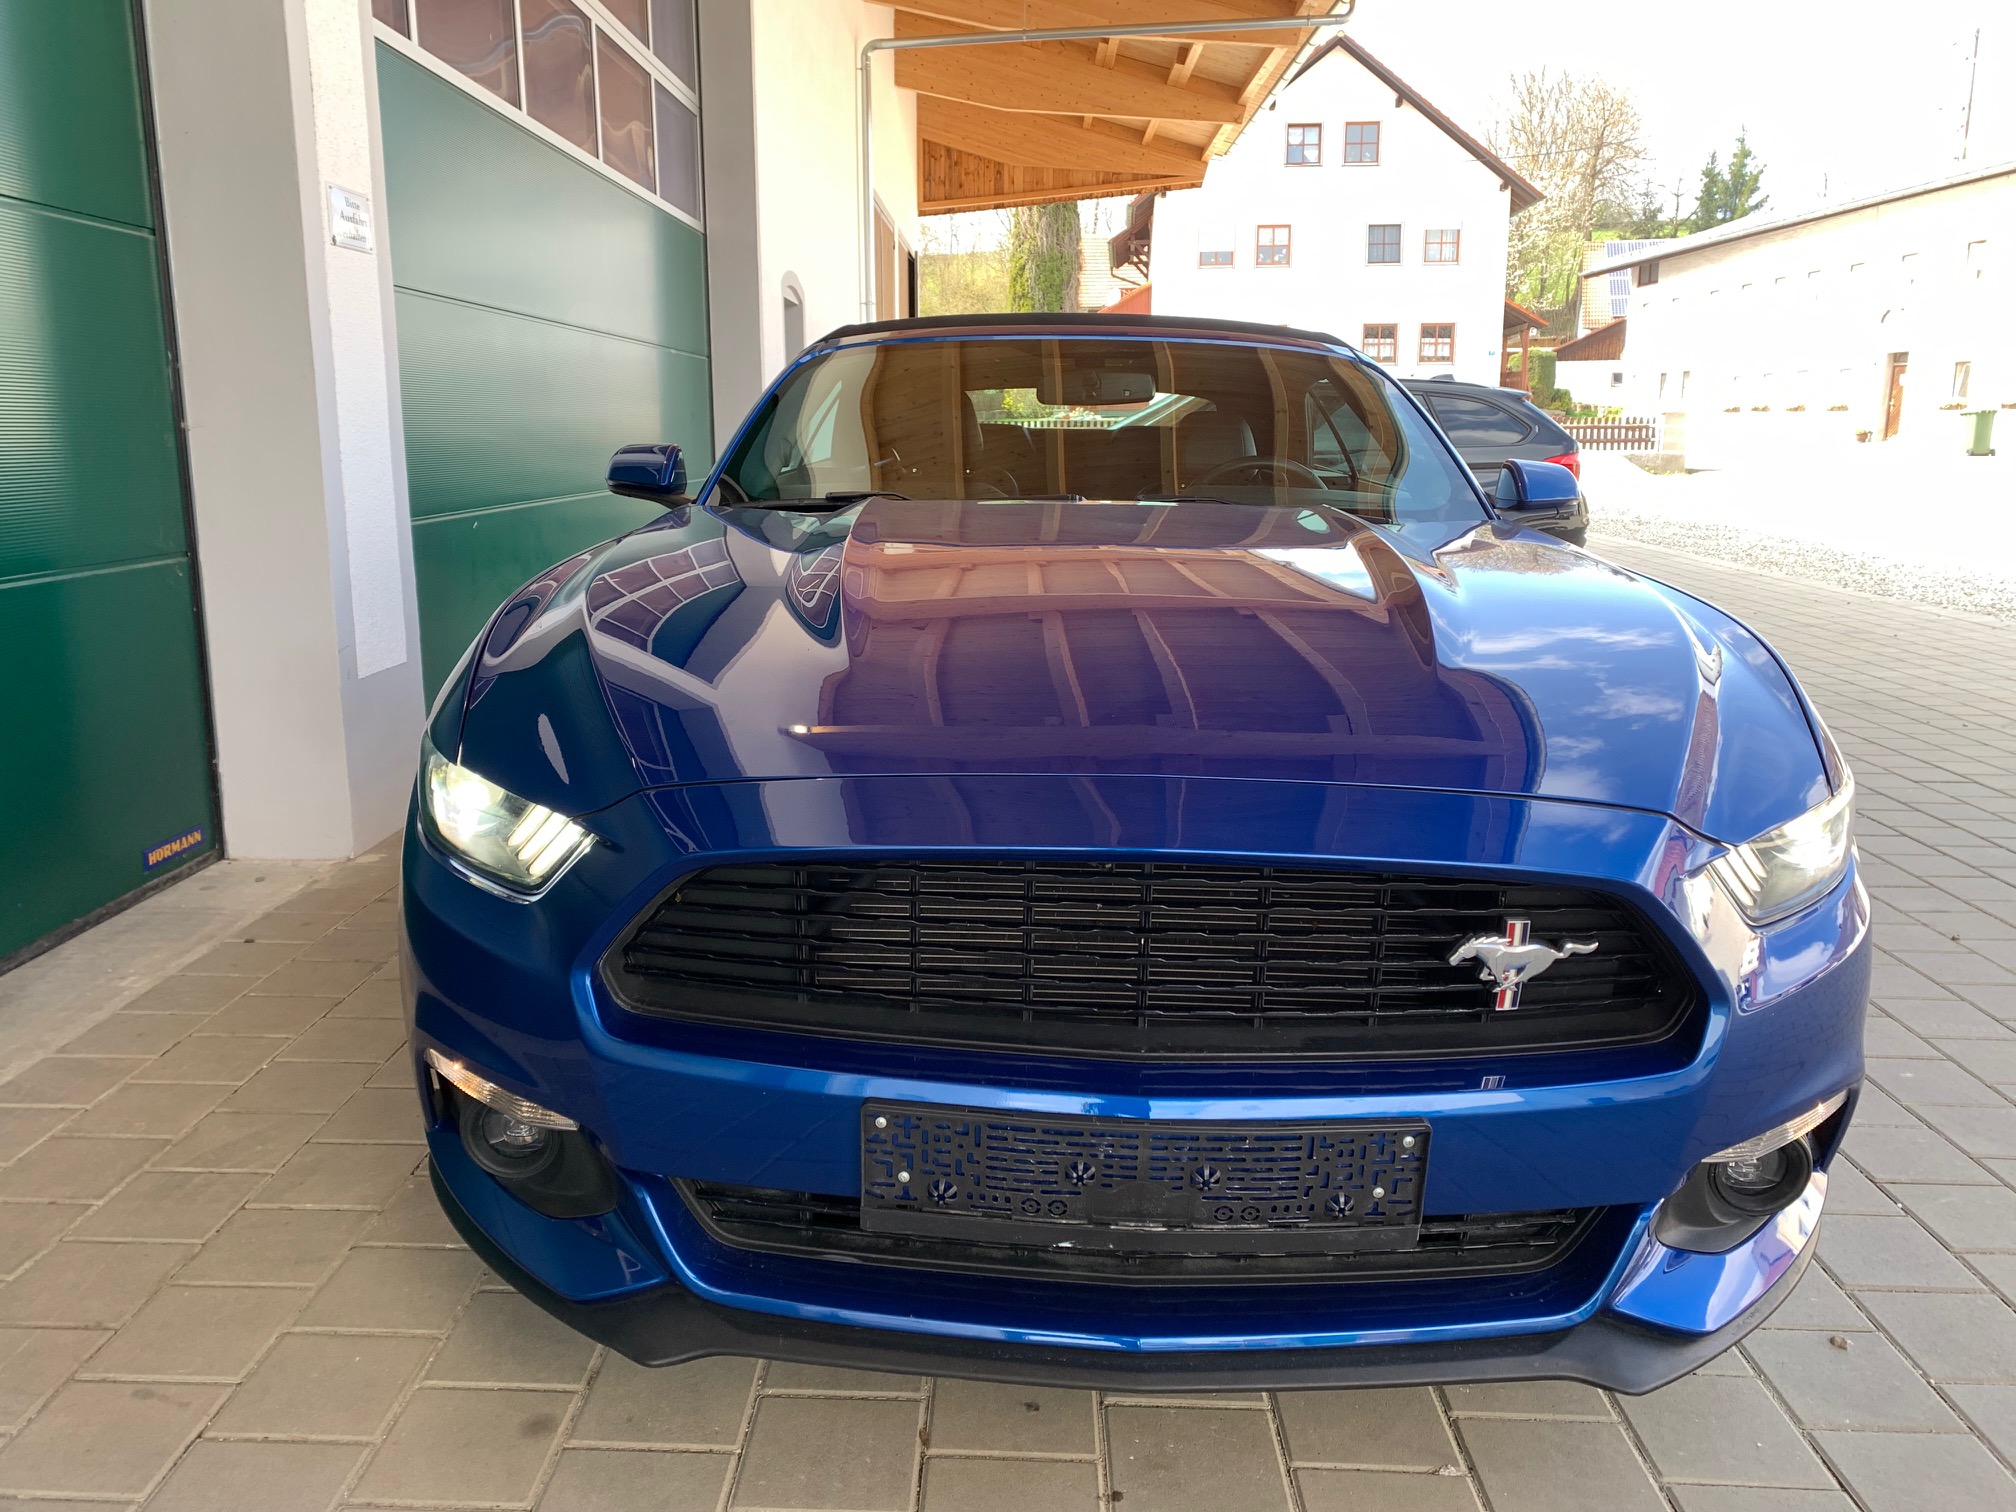 2017 Ford Mustang Convertible zu verkaufen9